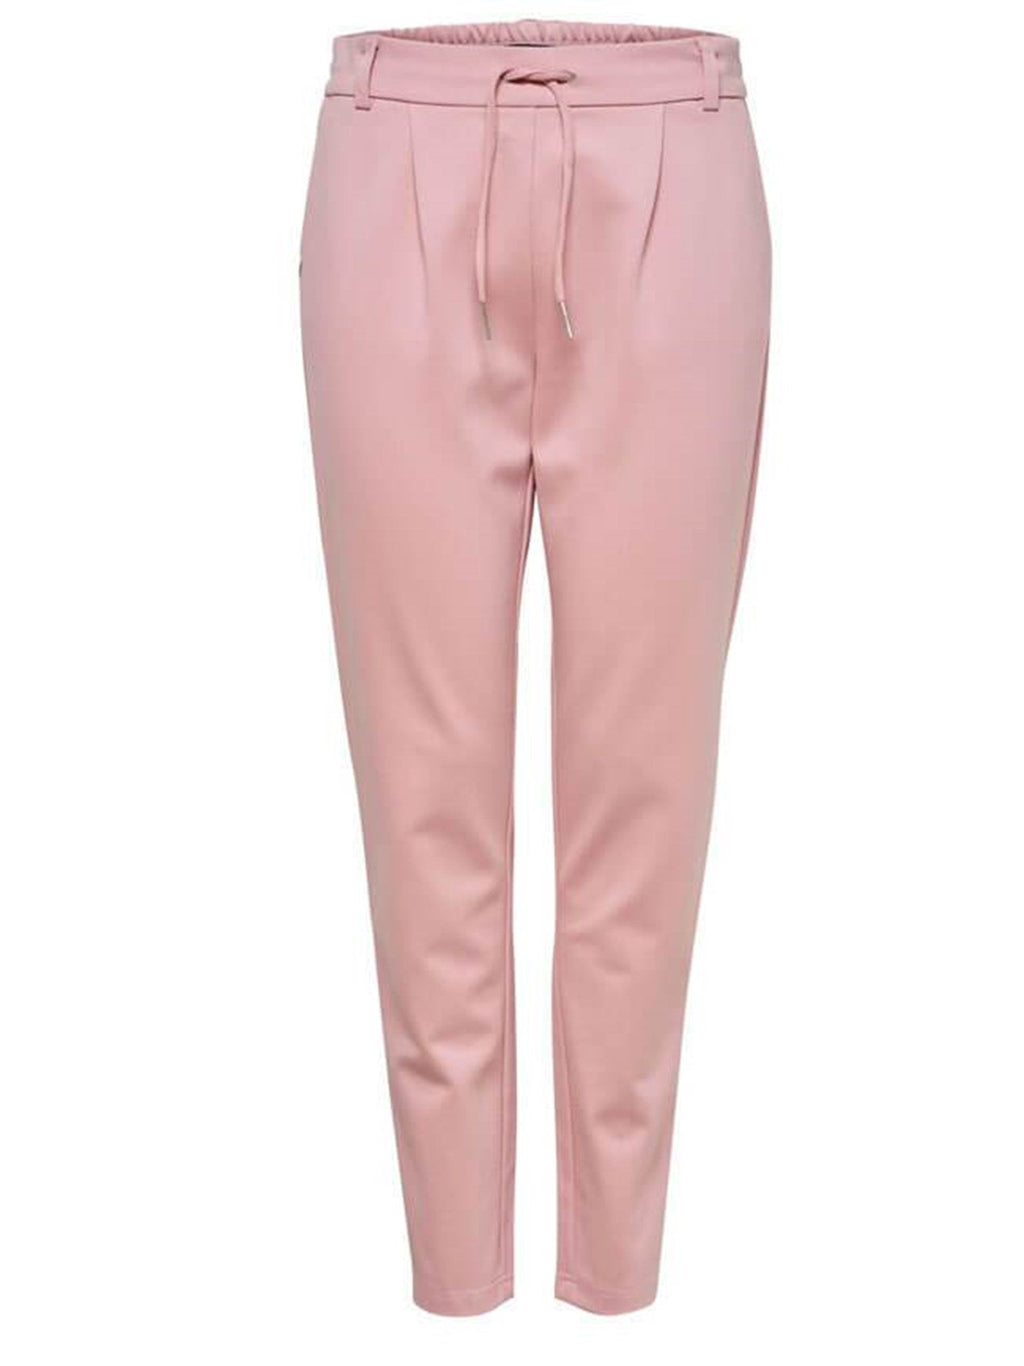 Poptrash Pants - Pink